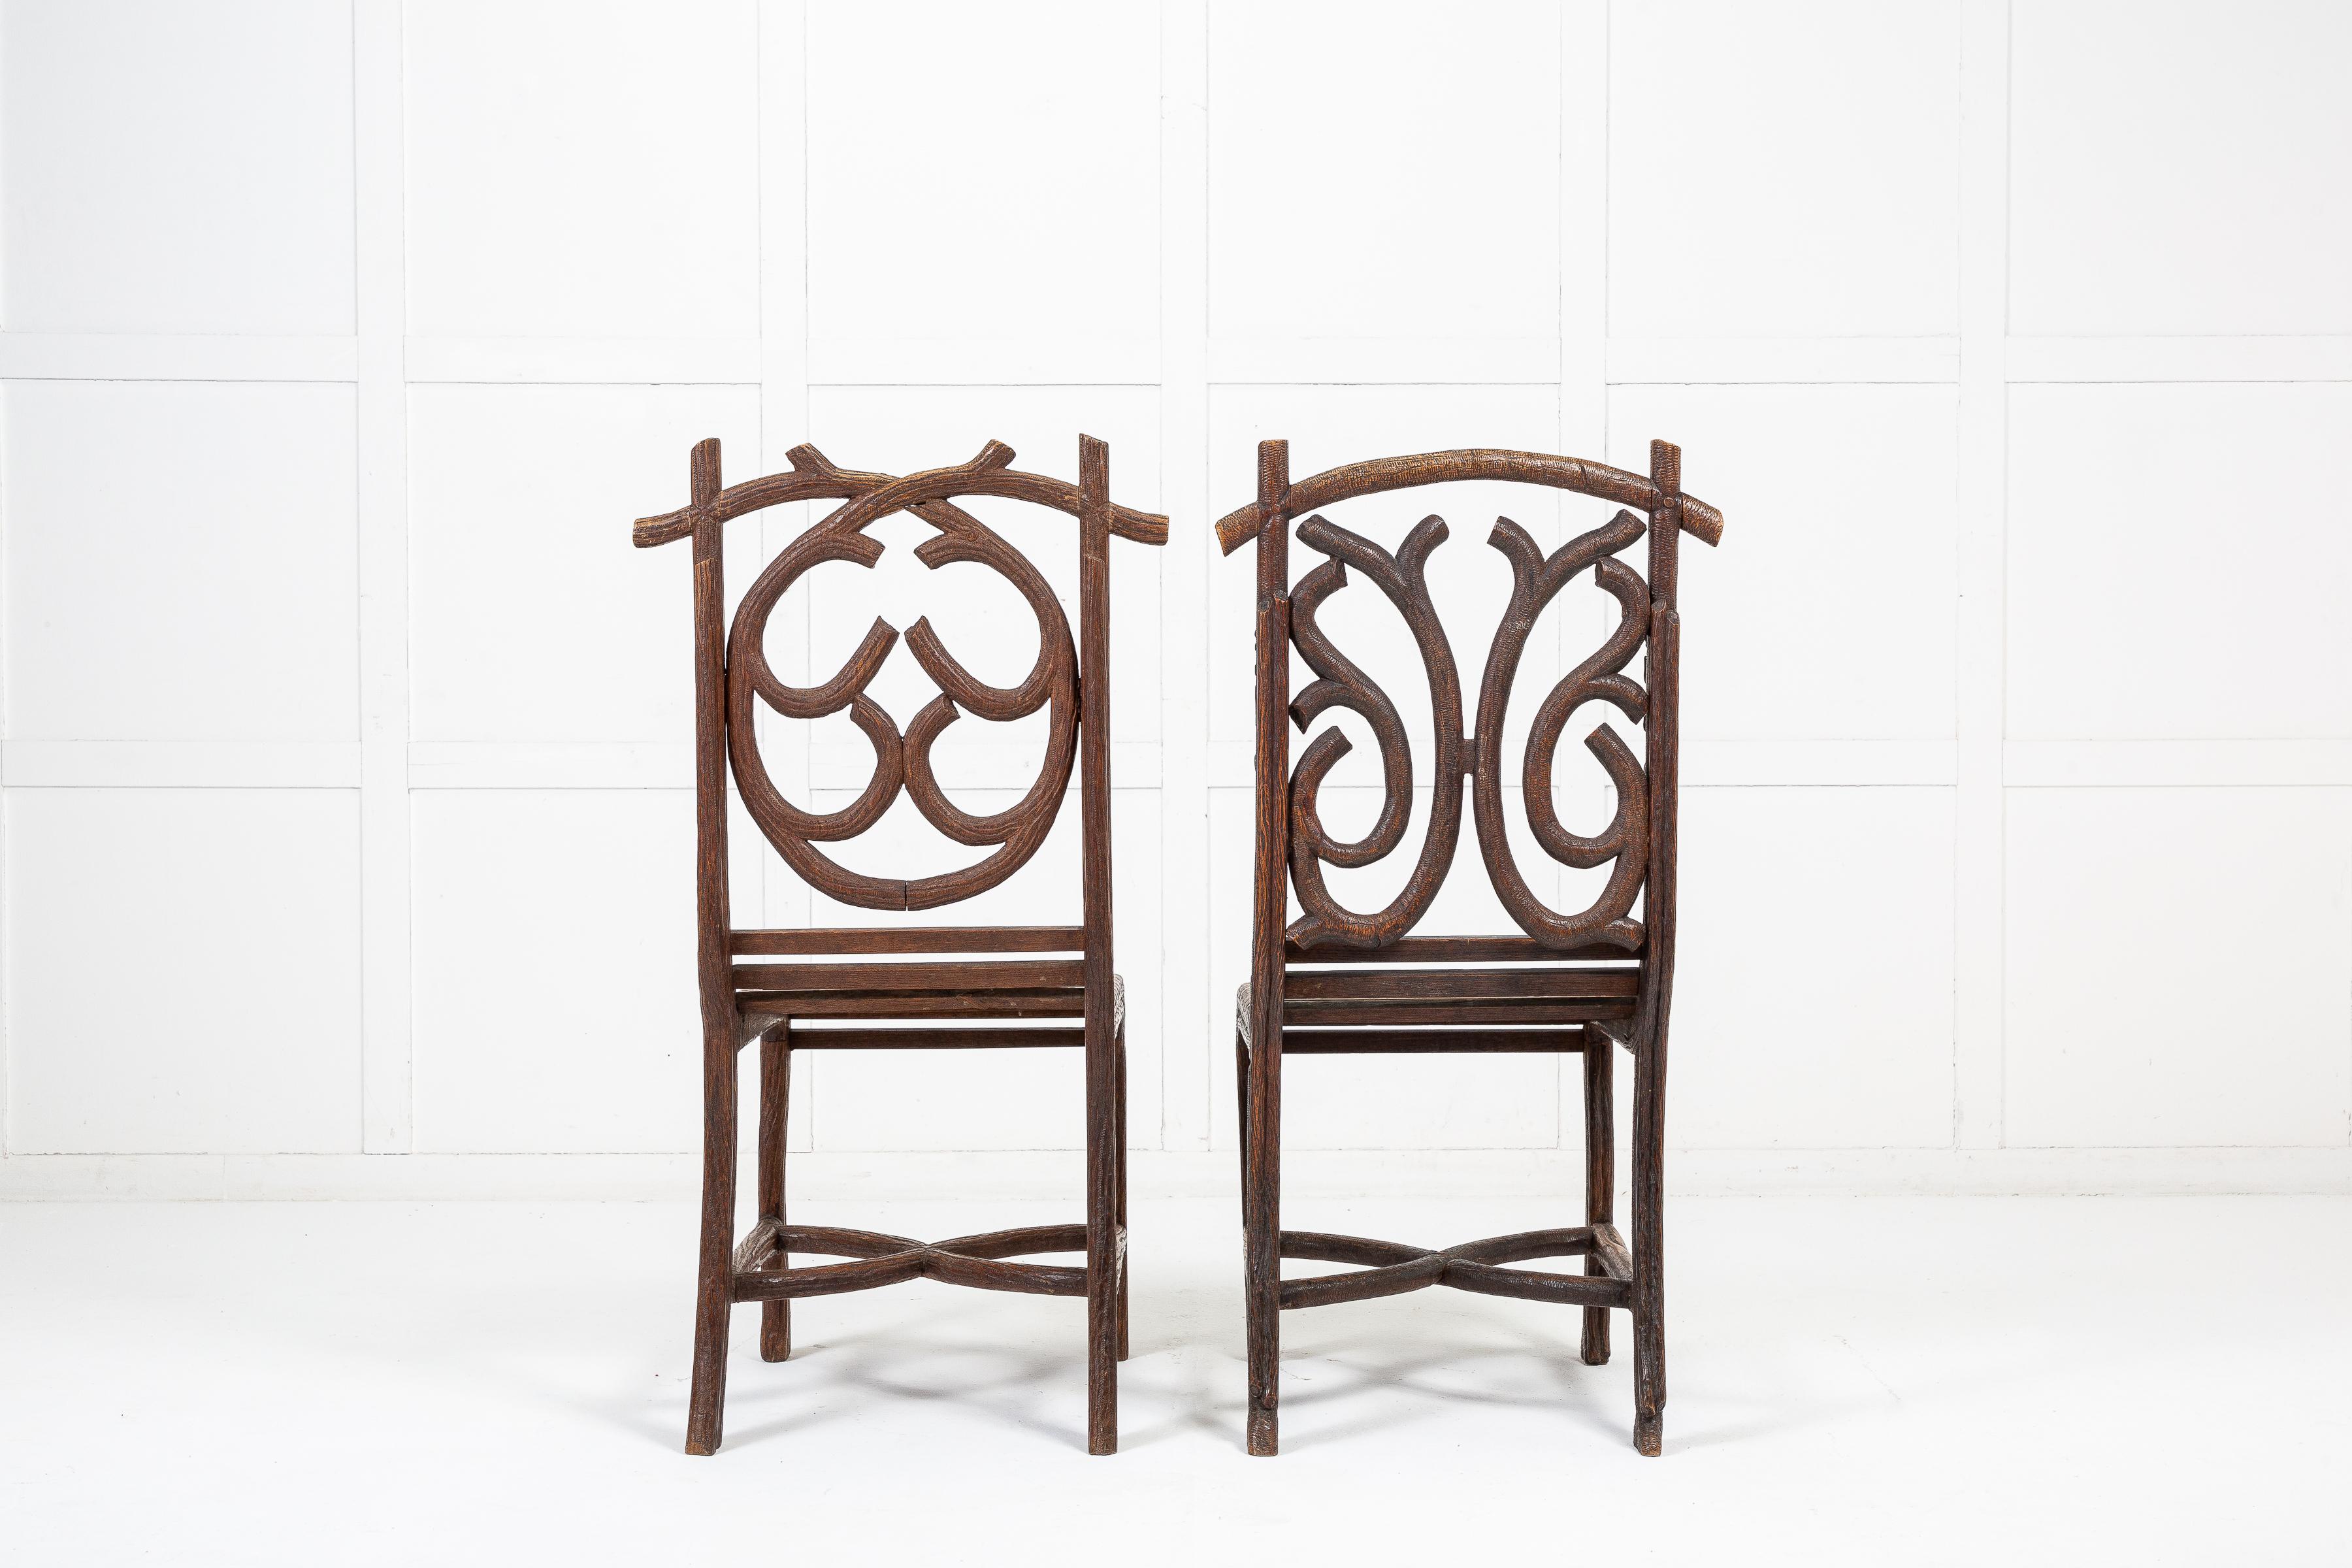 Une paire inhabituelle de chaises en bois de tilleul sculpté du 19ème siècle. Les dos et les jambes sont sculptés en forme de branches d'arbre et de vignes ornées de glands et de feuilles. Des banquettes à lattes reliant le cadre et des traverses